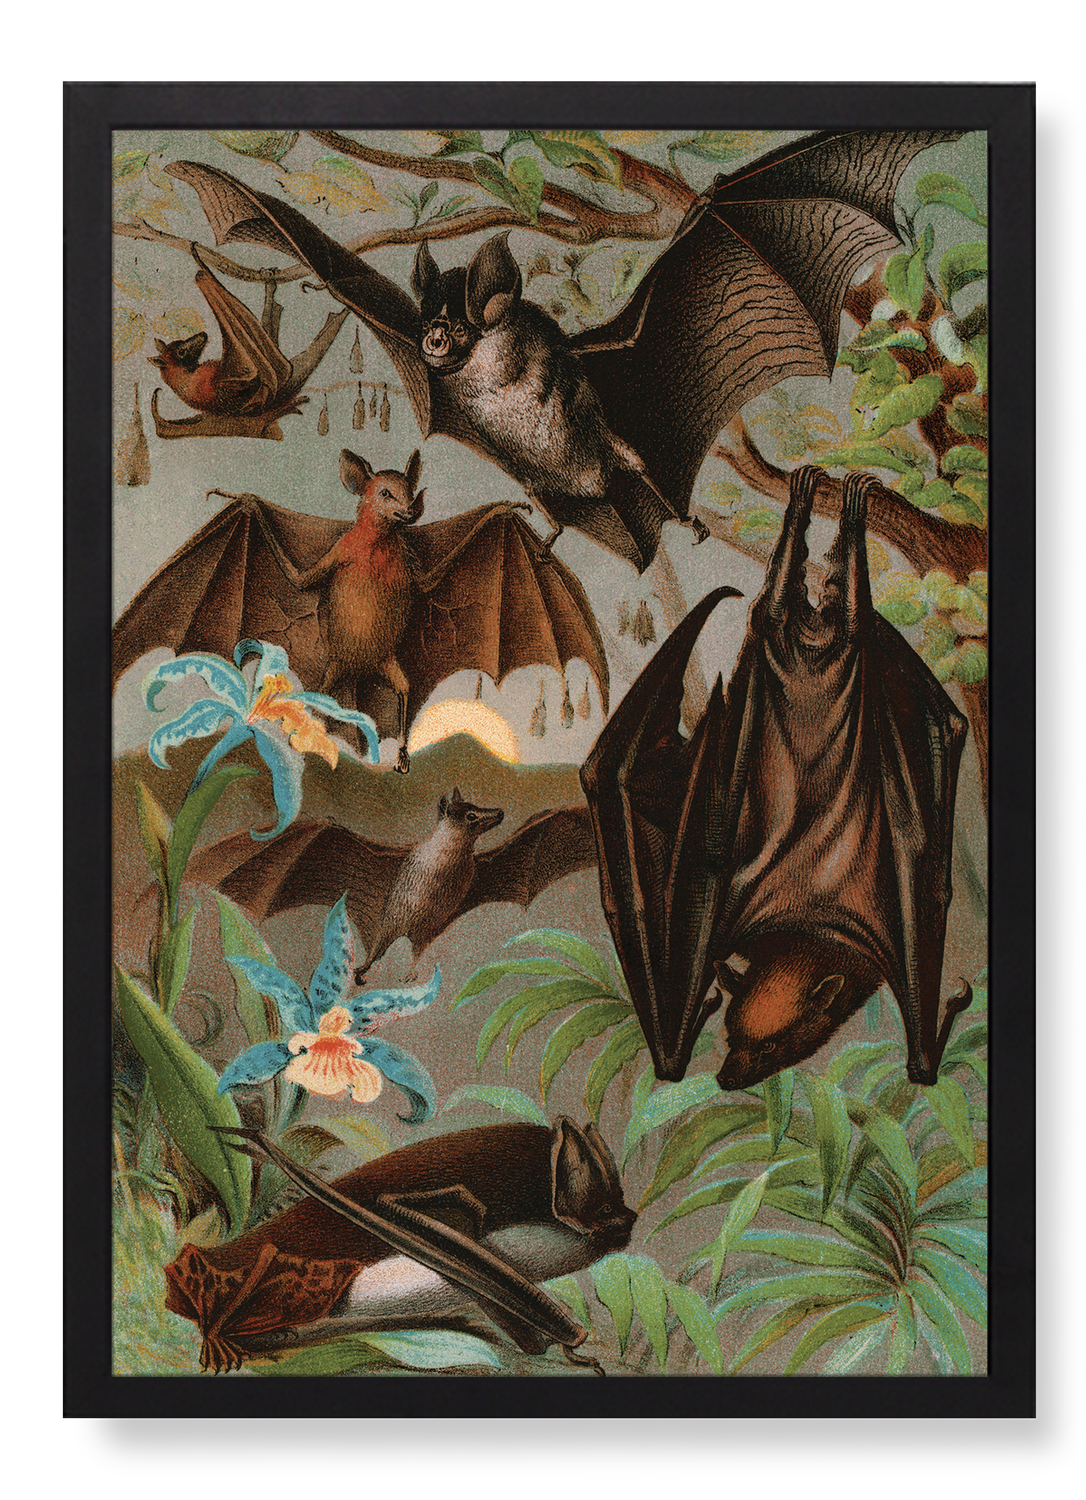 VARIOUS BATS (1880)